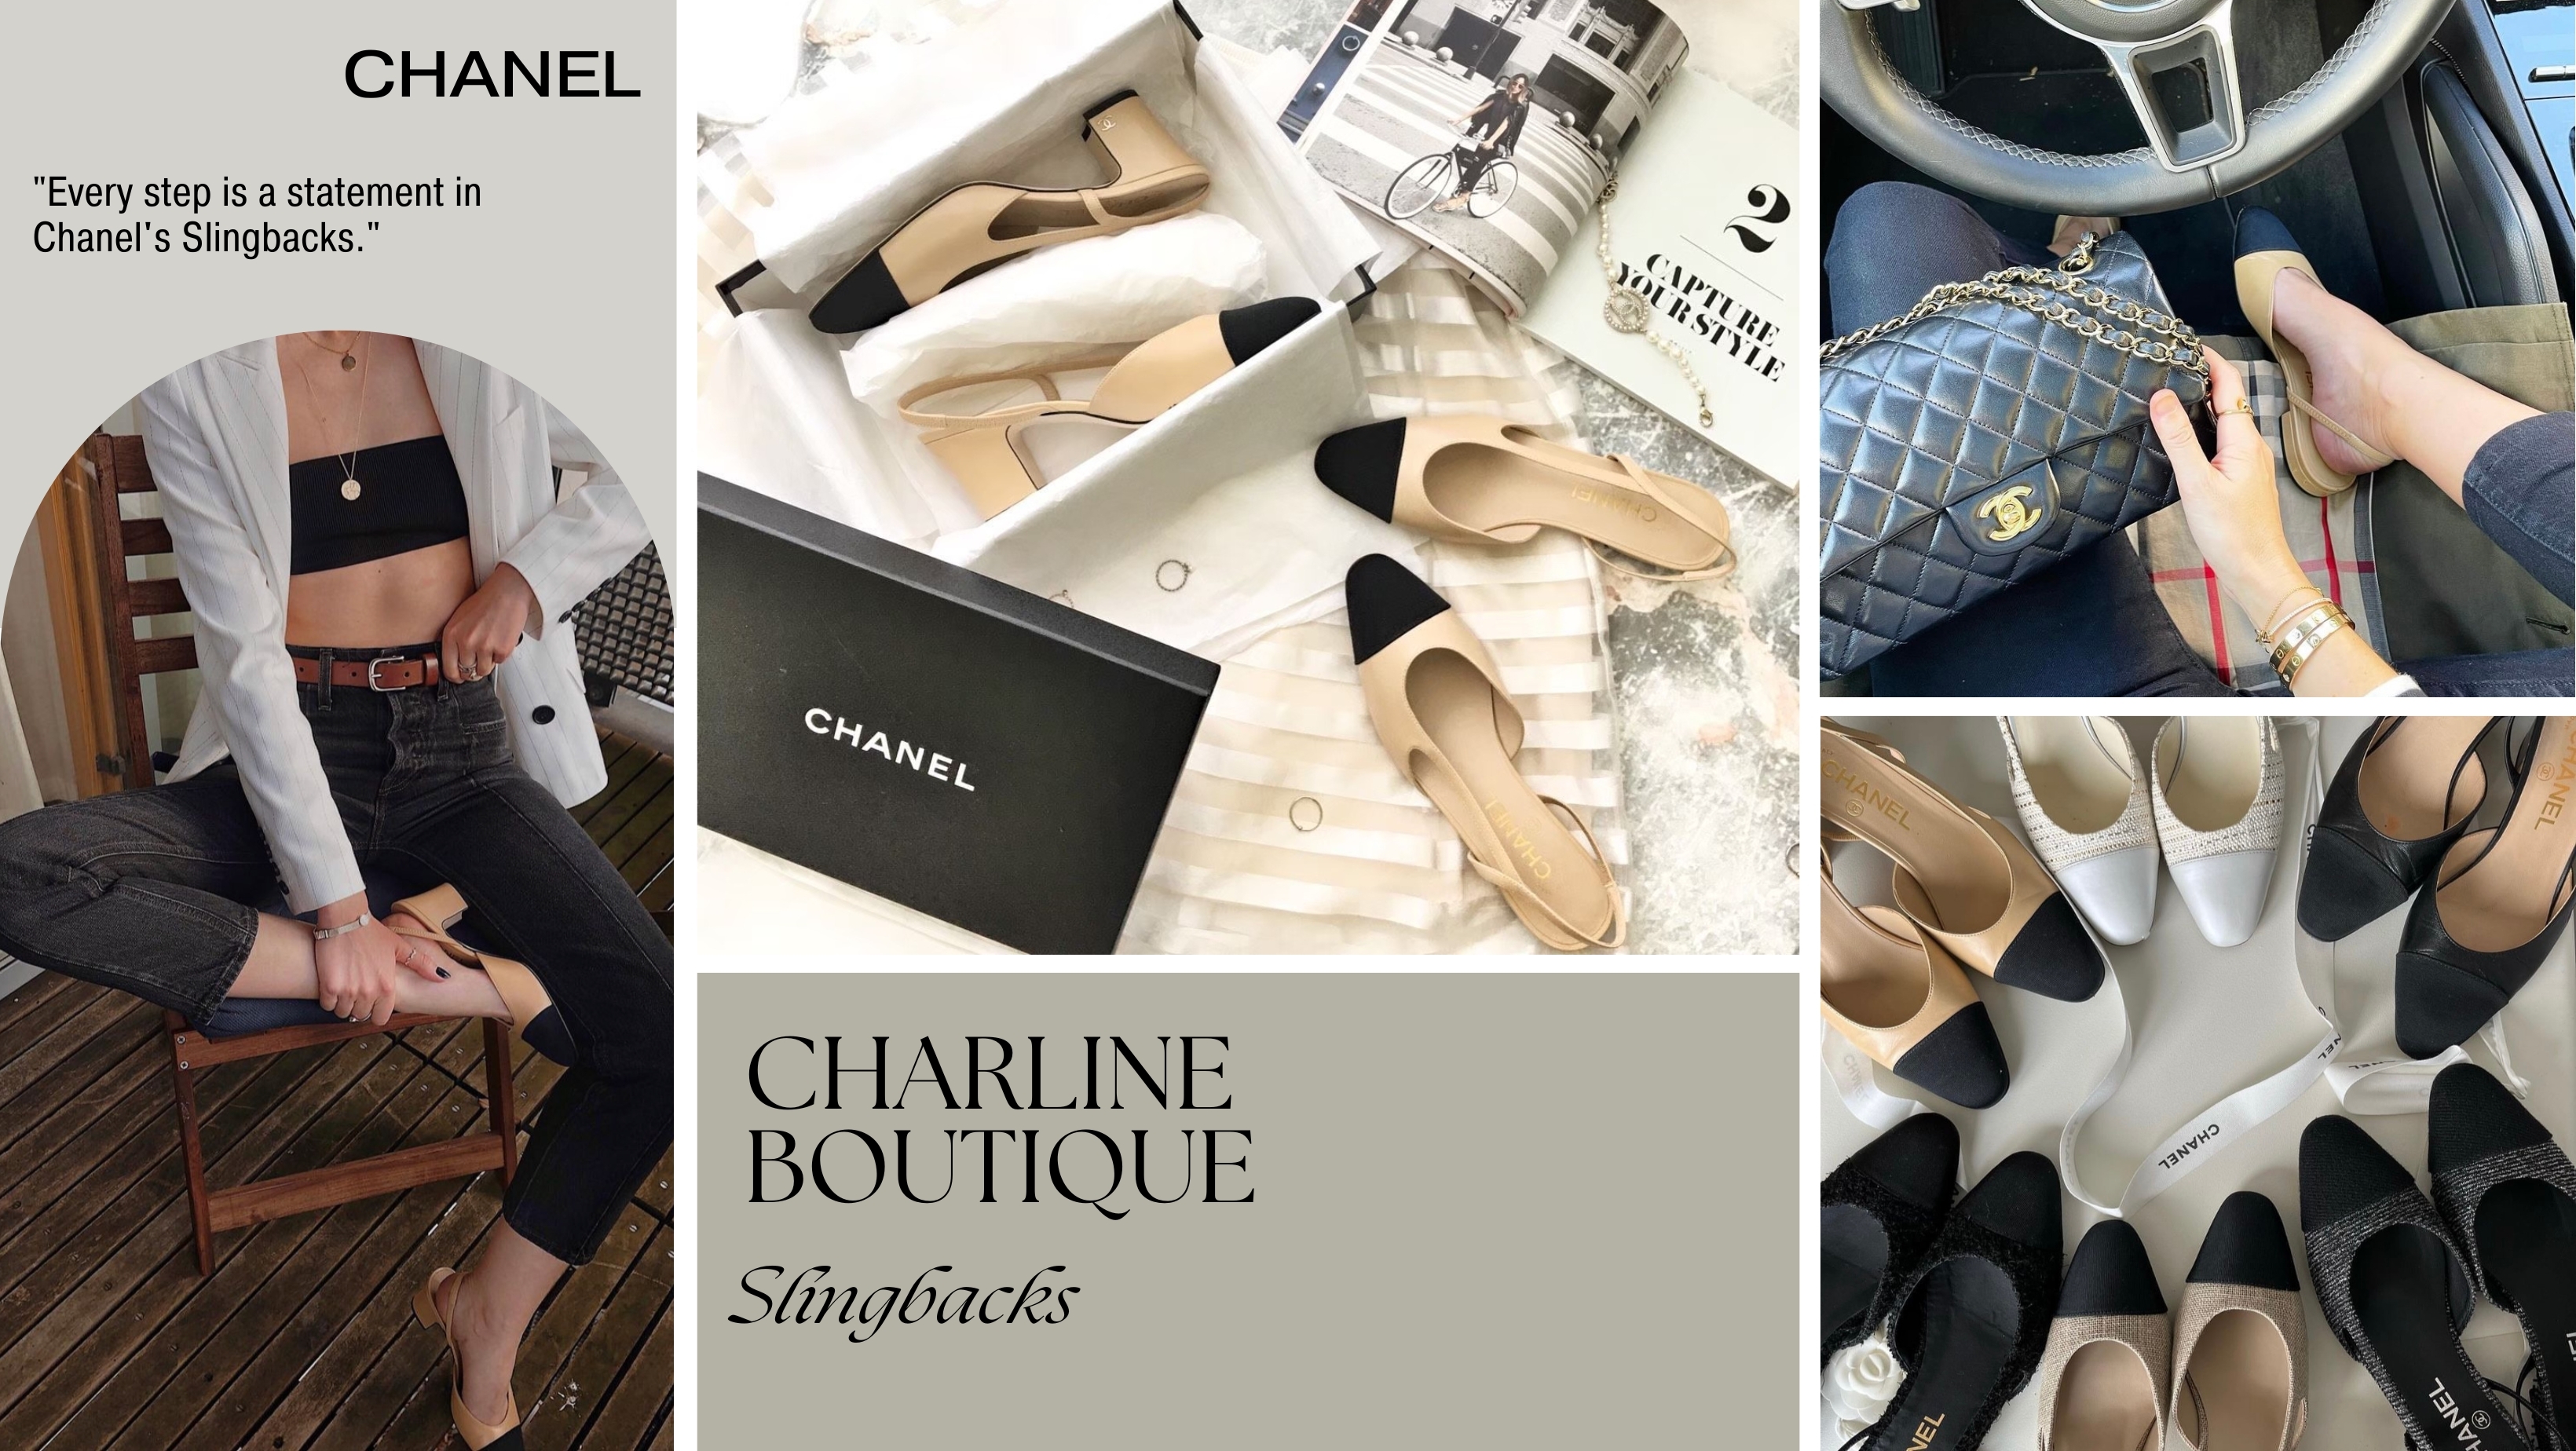 Chanel Slingbacks誕生於1957年，獨具大膽將男鞋的雙色設計引入女鞋，賦予女鞋更多變的造型。雖以簡約著稱，卻充滿細節：裸膚色鞋身貼近皮膚色調，視覺上延伸雙腿長度；特殊鏤空設計增添風韻，舒適的鞋跟高度，輕鬆行走。Chanel Slingbacks提供2.5cm平底和6.5cm跟高兩種選擇，適合不同需要。鞋款配色和材質多變，由經典皮革到粗花呢、牛仔等不同材質的絆帶鞋，滿足各種喜好，令其成為每個女孩不可或缺的鞋櫃必備之選！